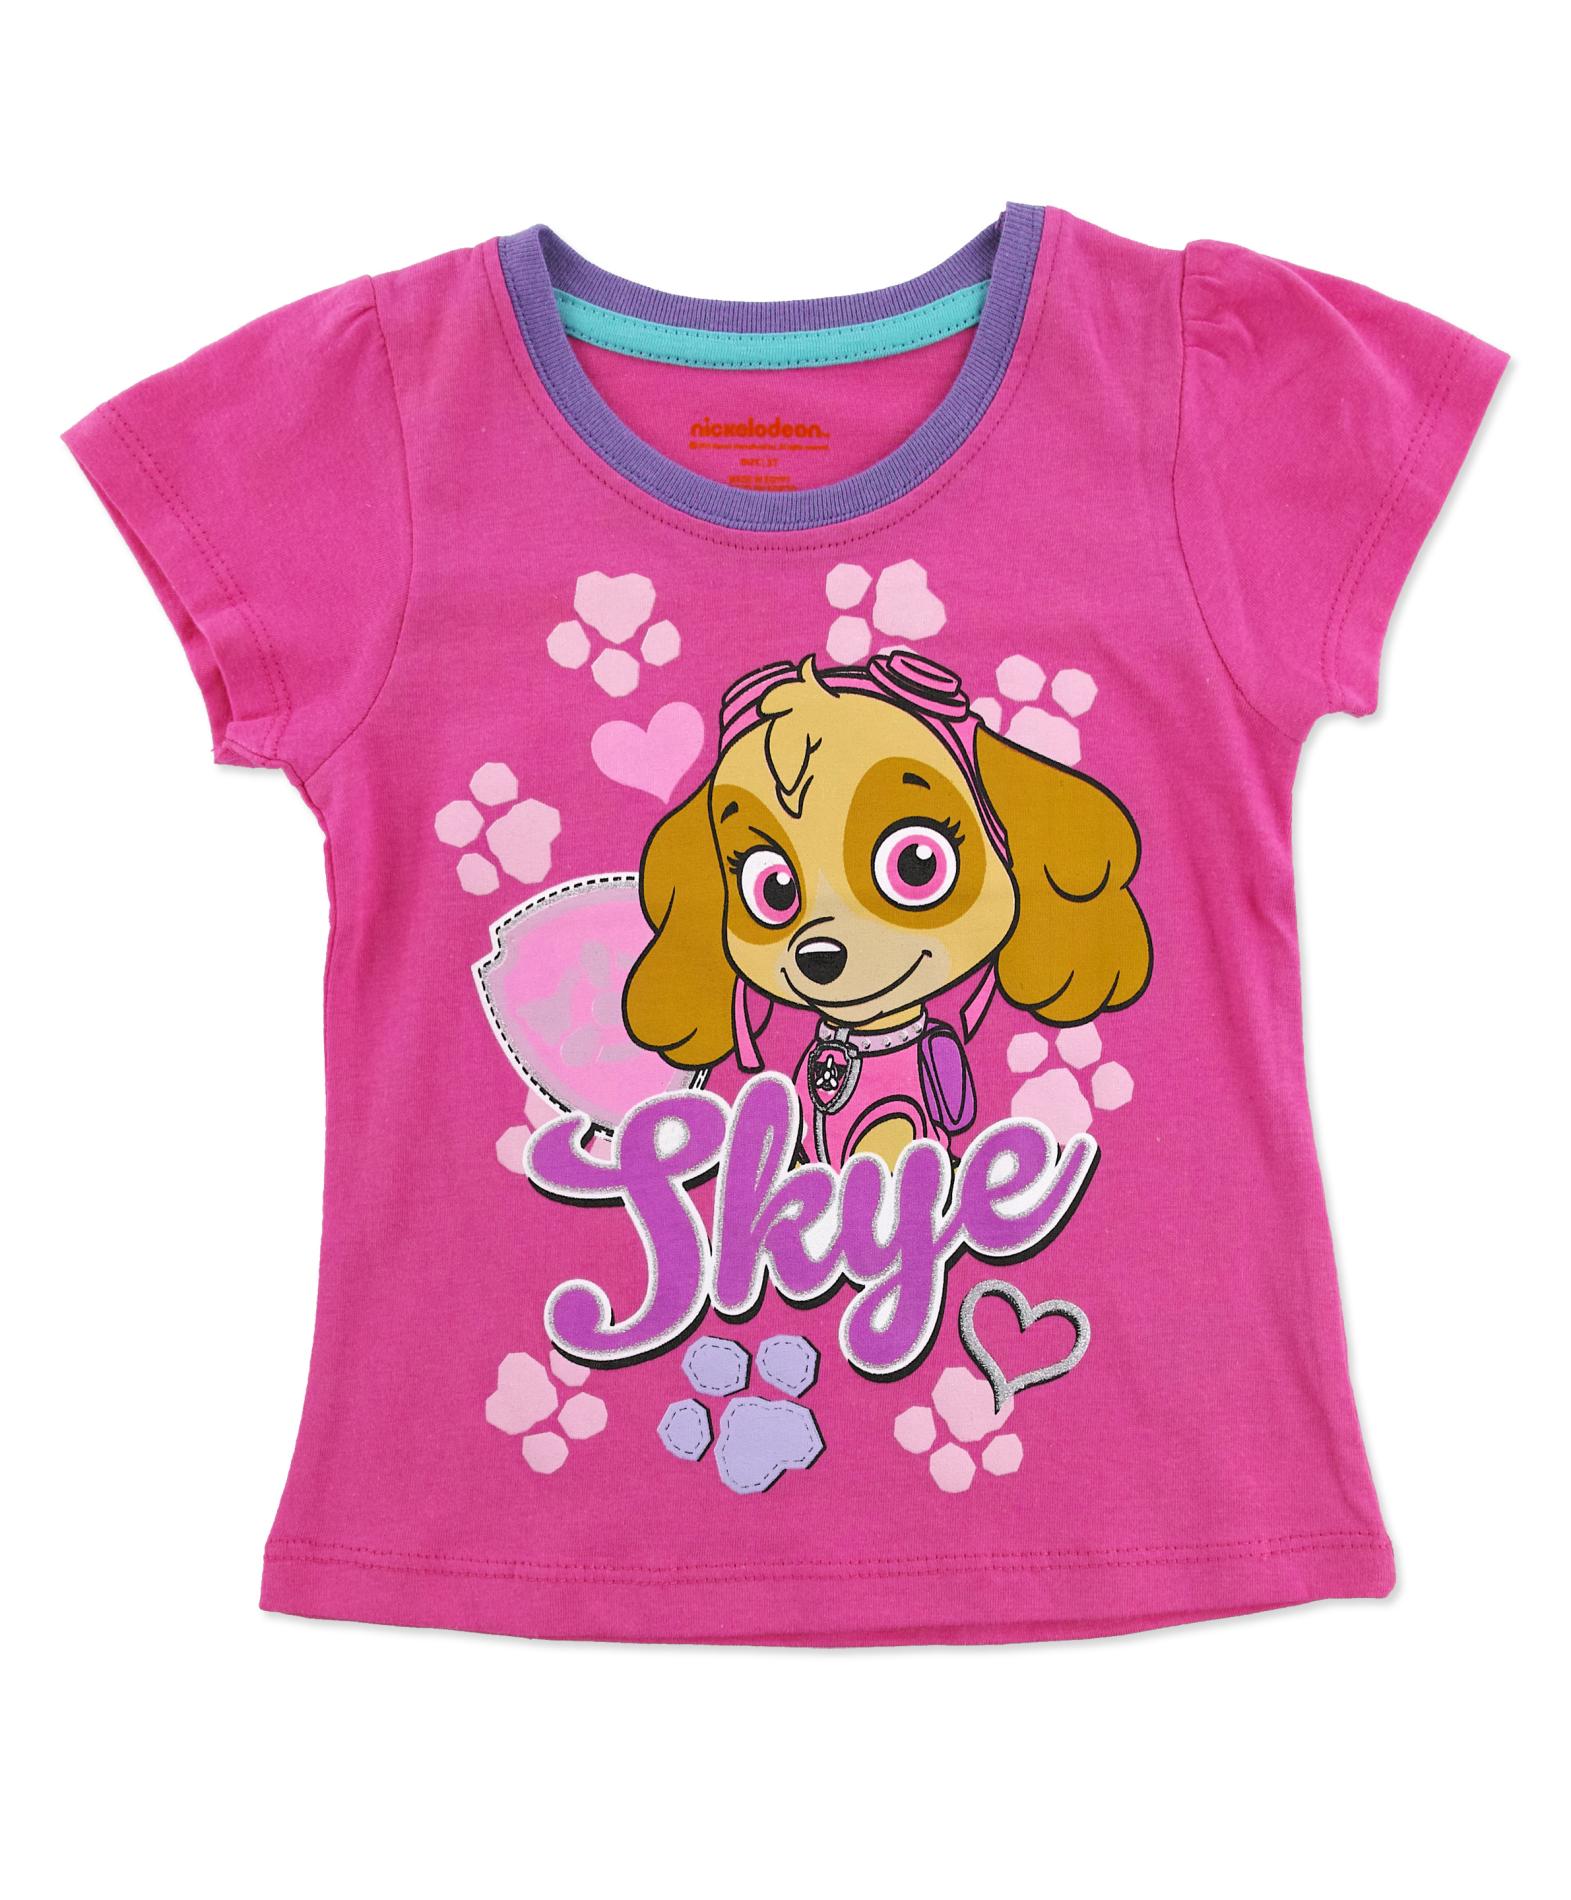 Nickelodeon PAW Patrol Toddler Girl's T-Shirt - Skye